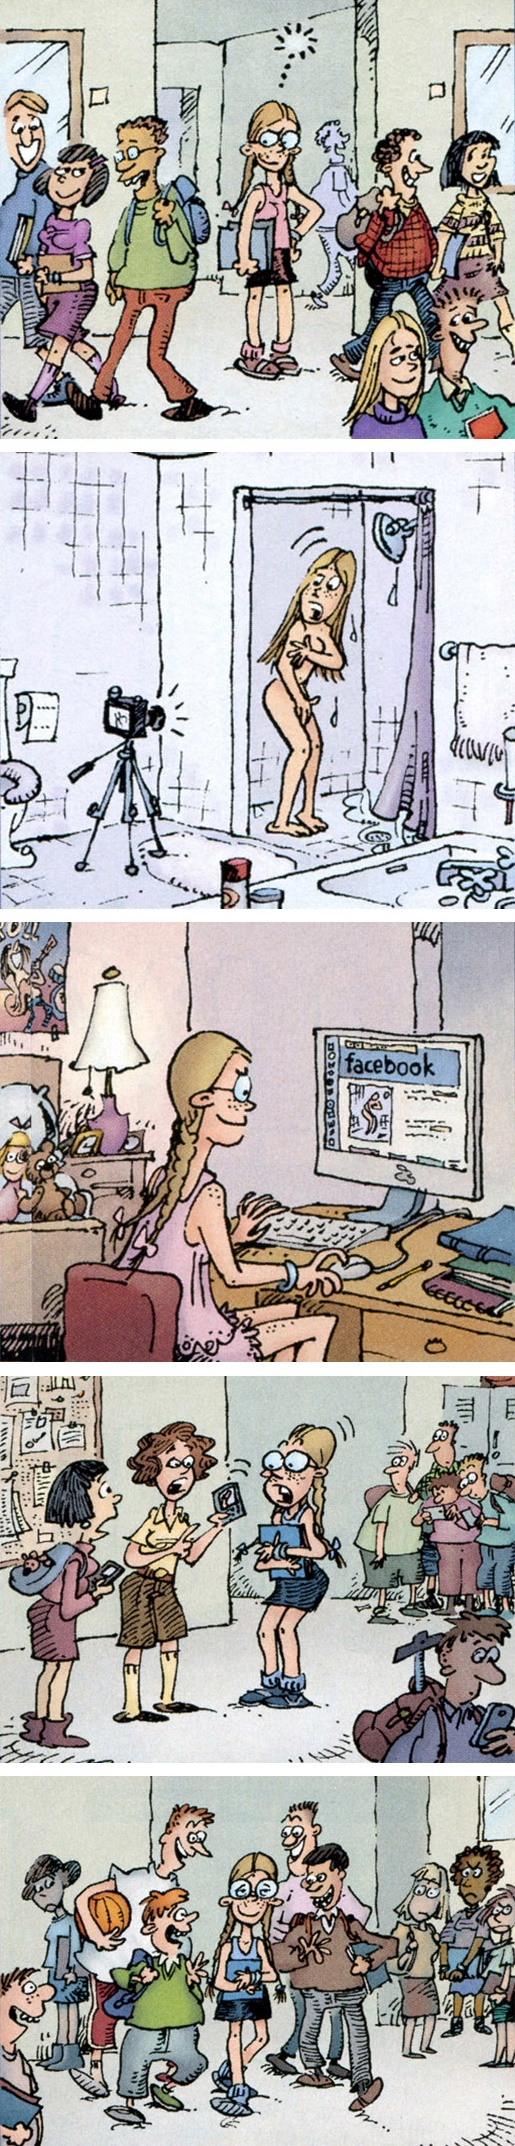 facebook y la popularidad